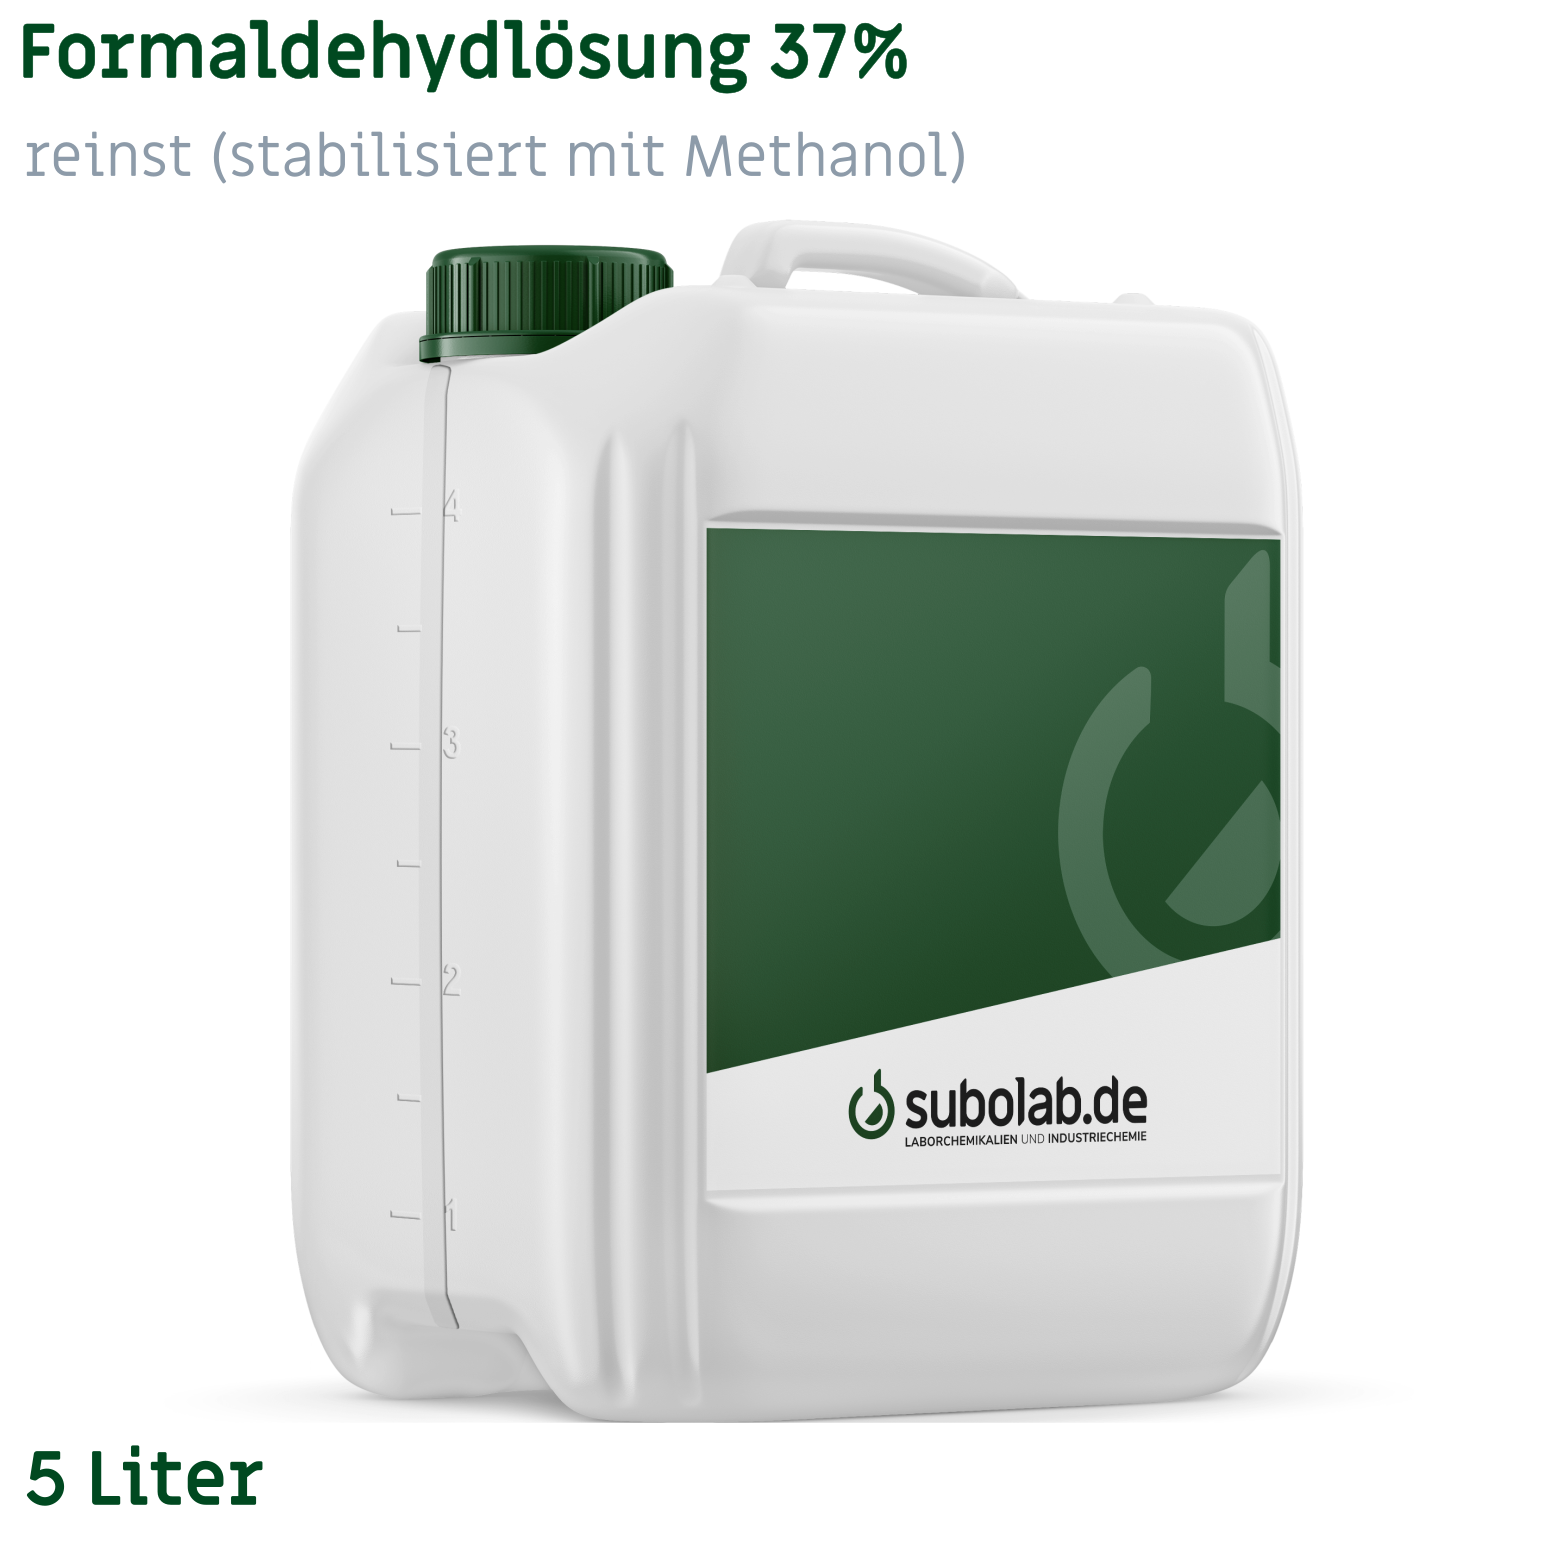 Bild von Formaldehydlösung 37% reinst (stabilisiert mit Methanol) (5 Liter)